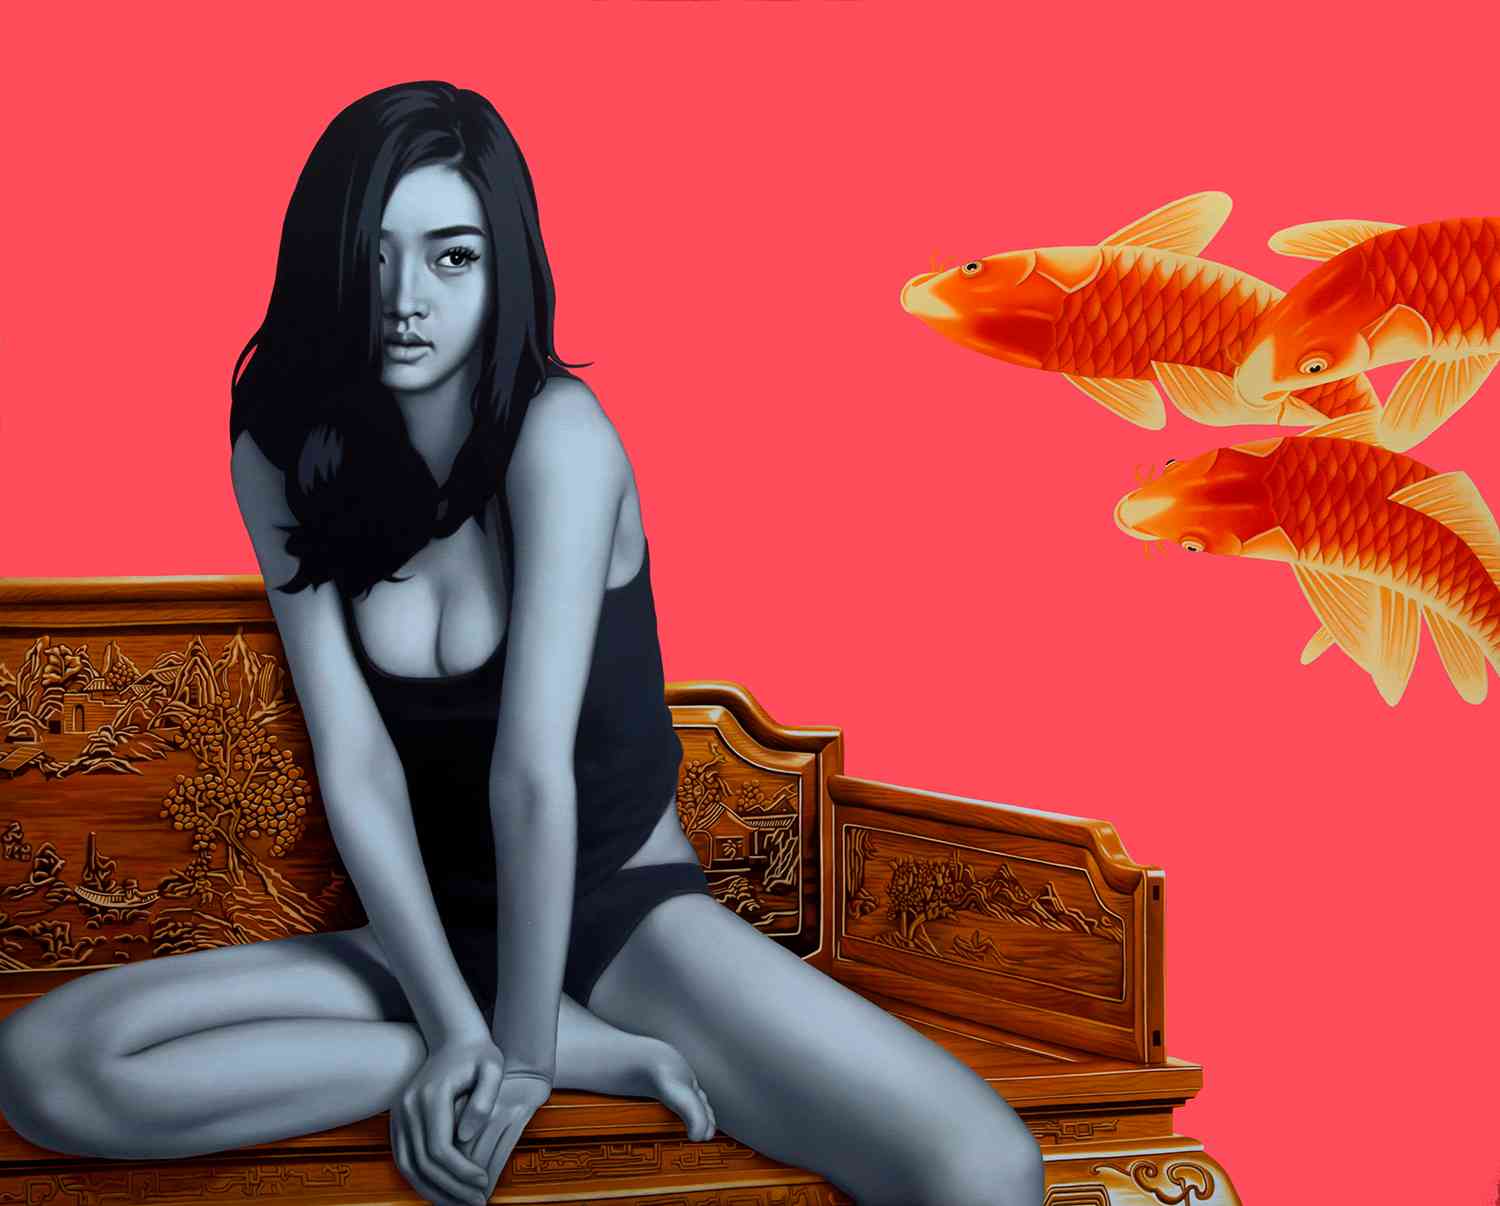 鱼.女孩 Fish Girl 170x210cm 布面油画 oil on canvas